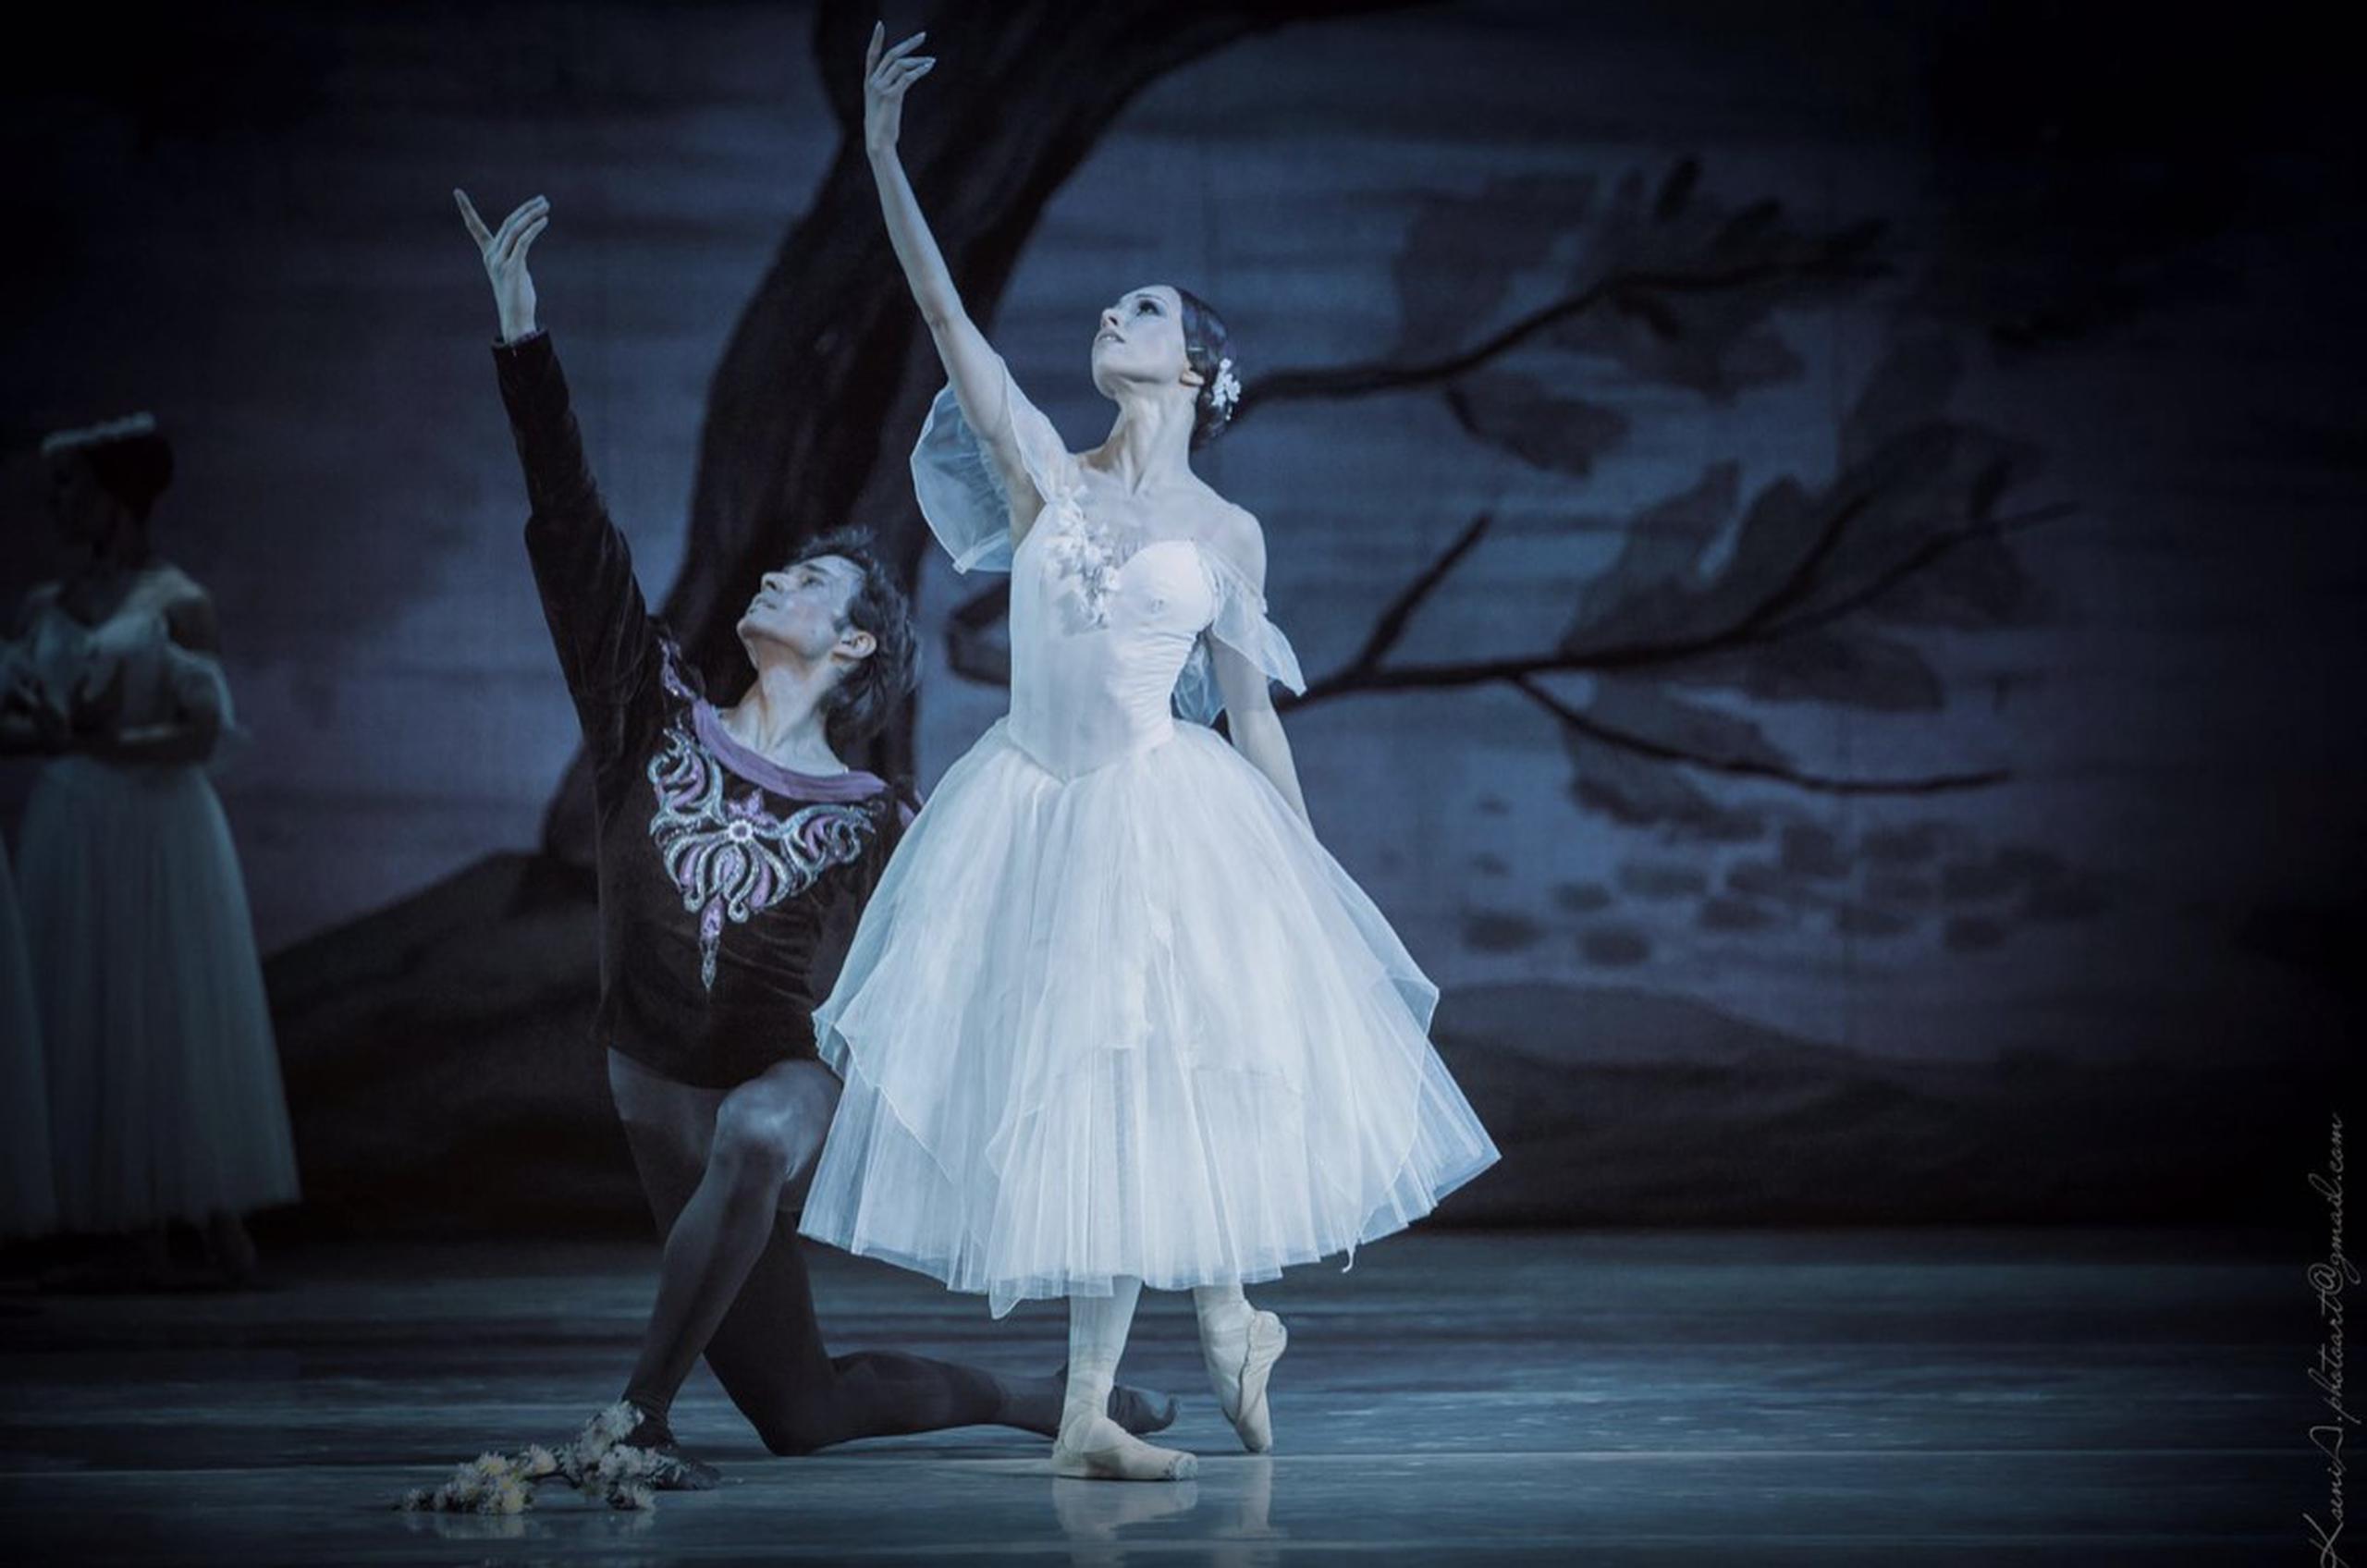 Estrenada en el 1841, "Giselle" es considerada obra maestra absoluta del teatro de la danza del romanticismo.